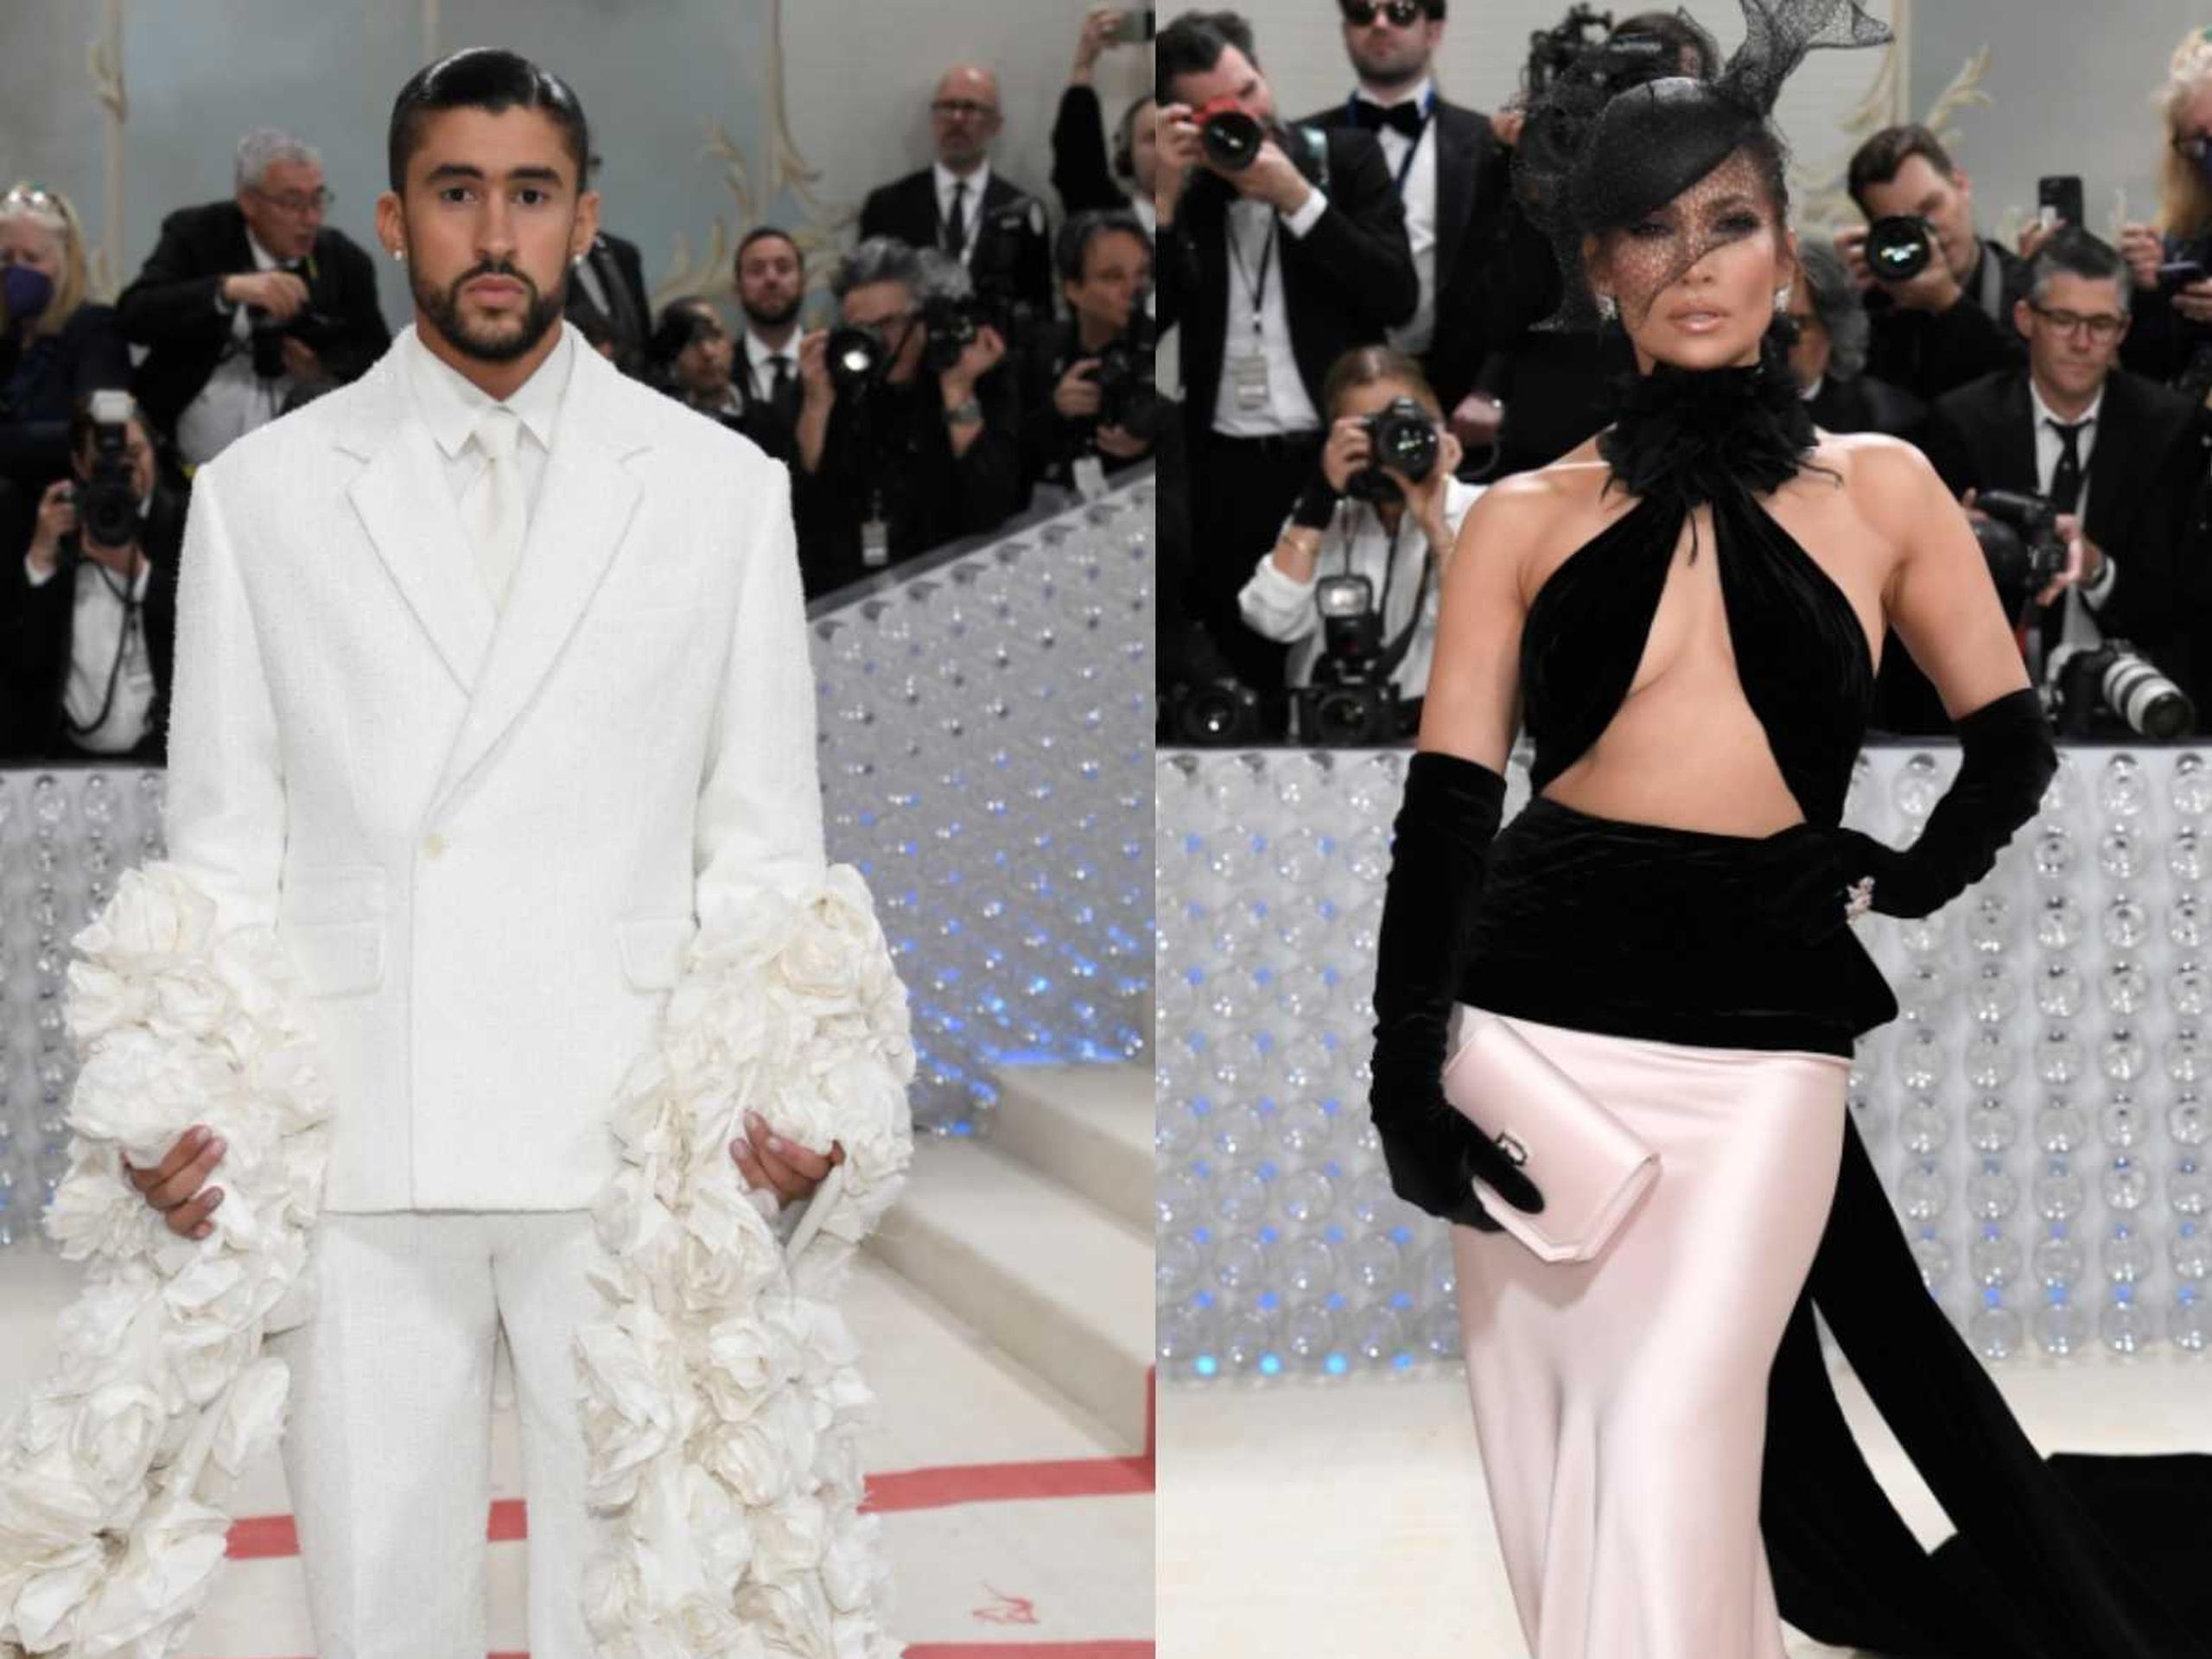 Los artistas puertorriqueños Bad Bunny y Jennifer López coincidieron durante la gala del Met el año pasado.